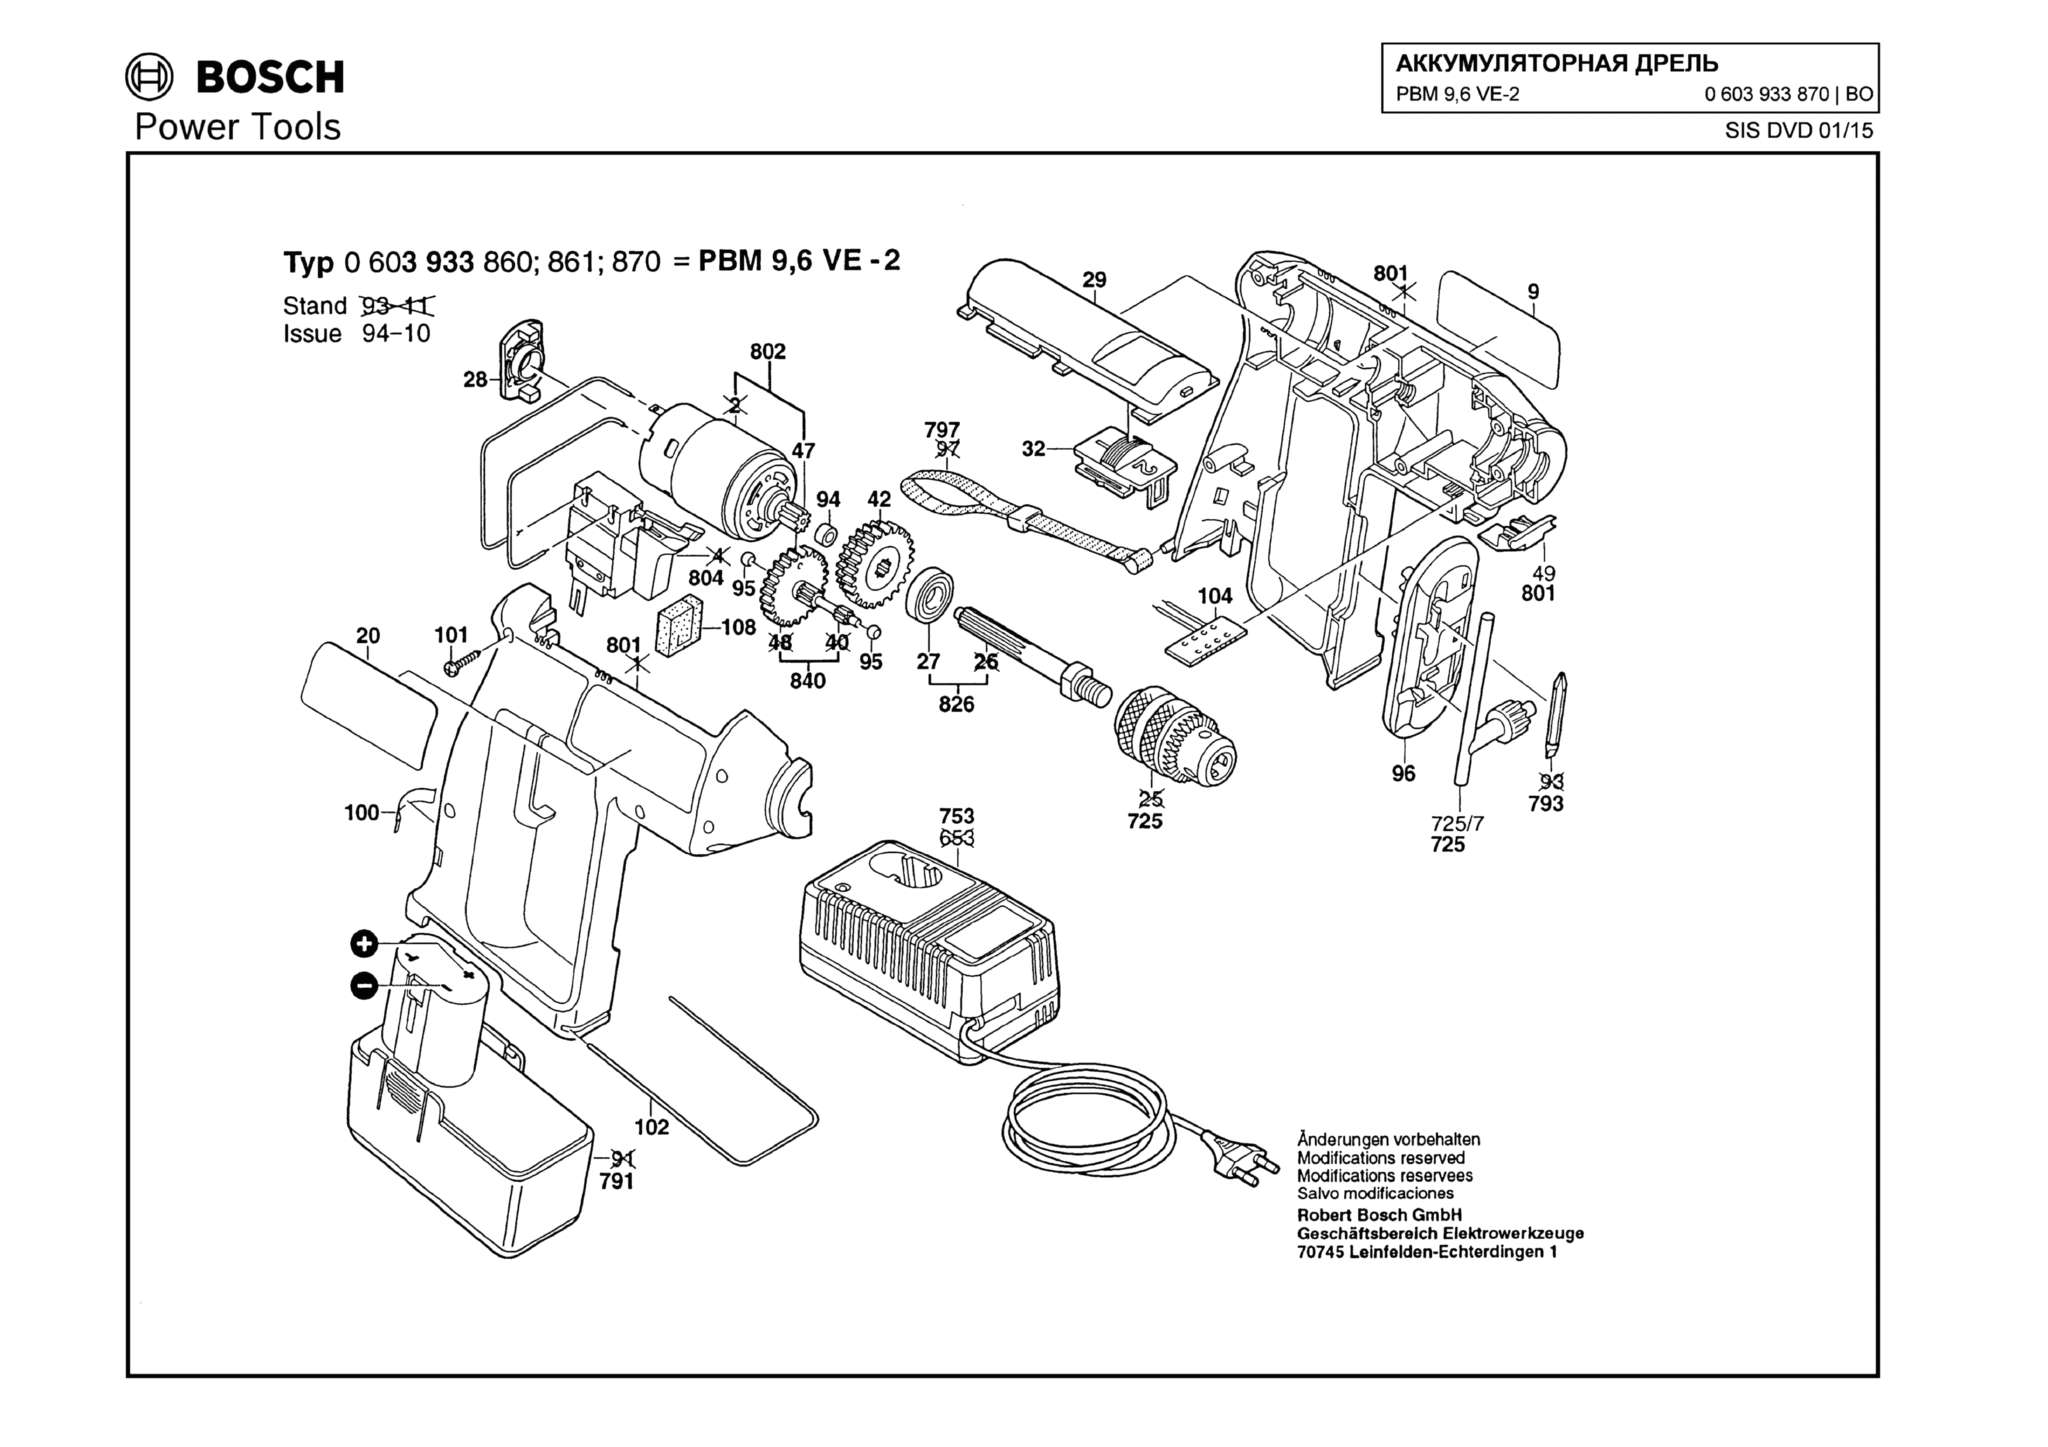 Запчасти, схема и деталировка Bosch PBM 9,6 VE-2 (ТИП 0603933870)